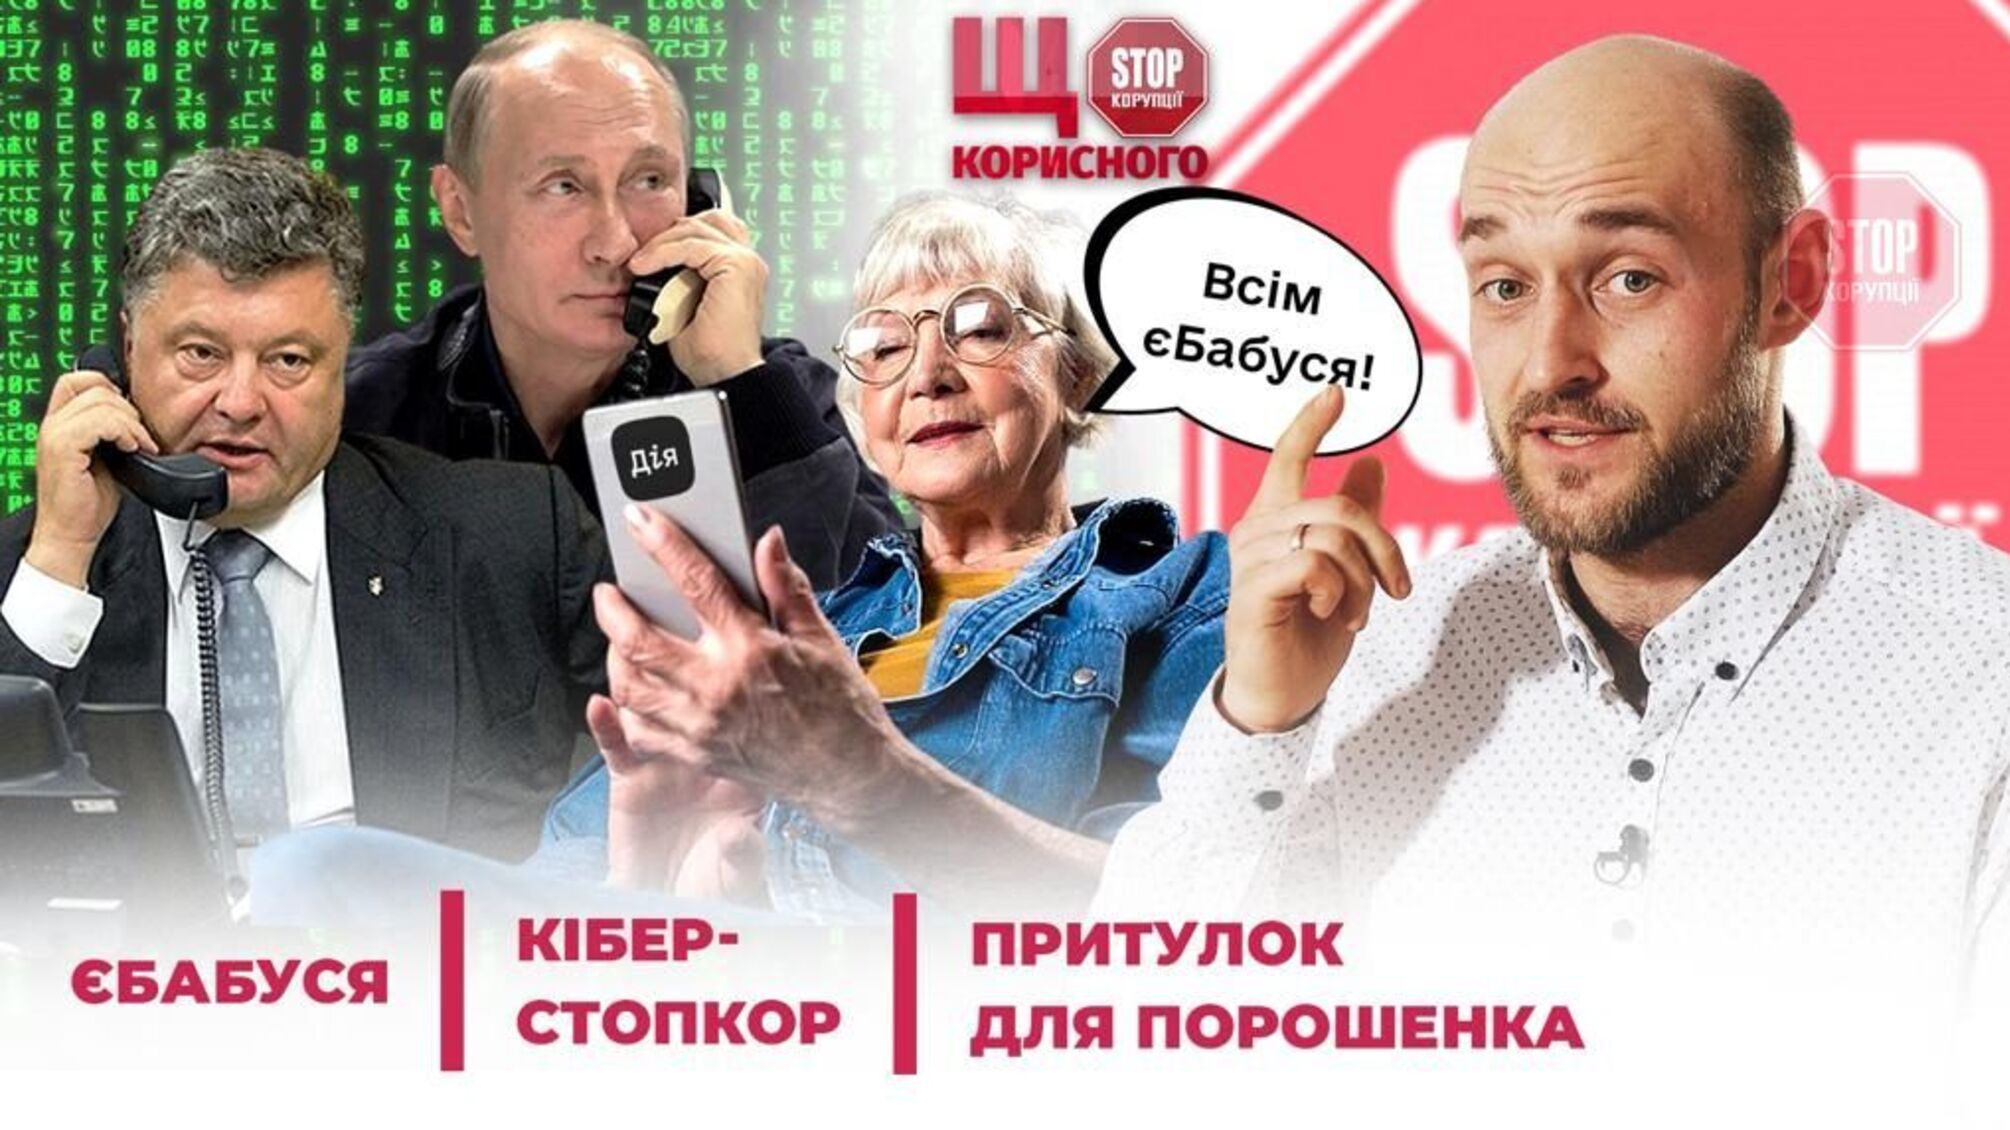 еБабушка и еДедушка: кто и когда получит смартфоны от Зеленского?